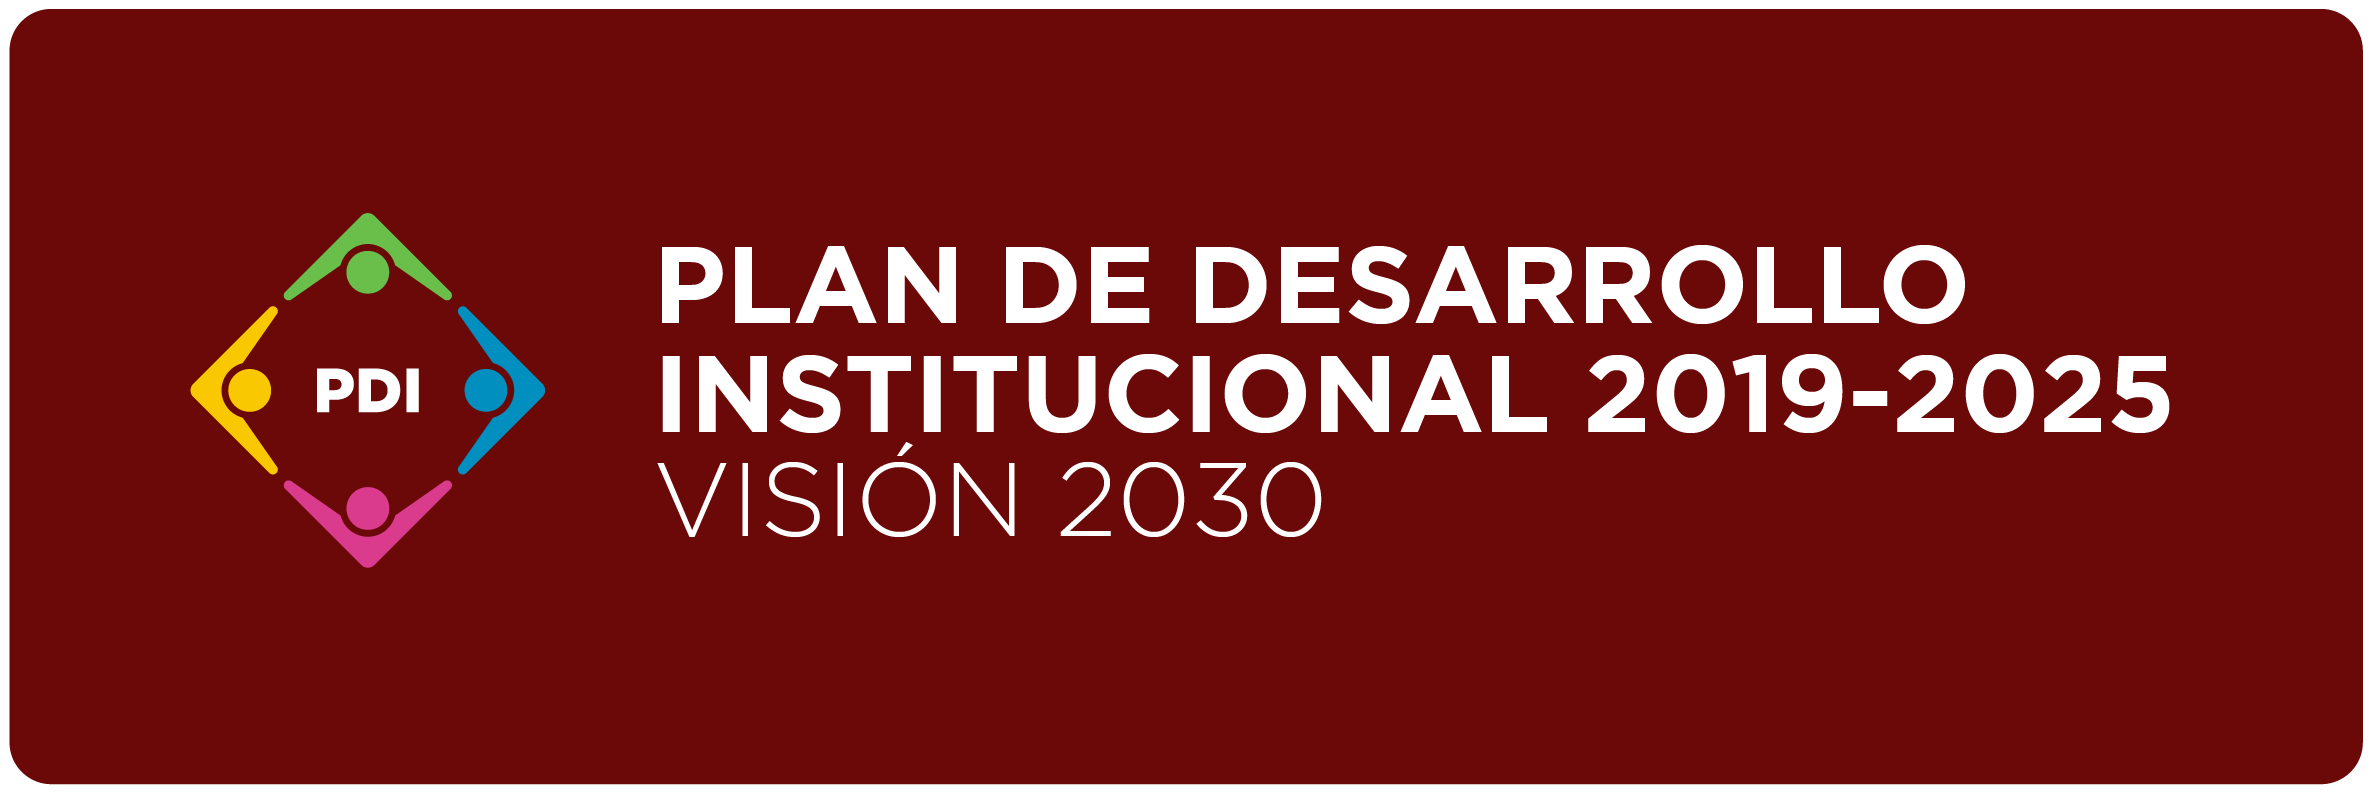 Plan de Desarrollo Institucional 2019-2025 UDG